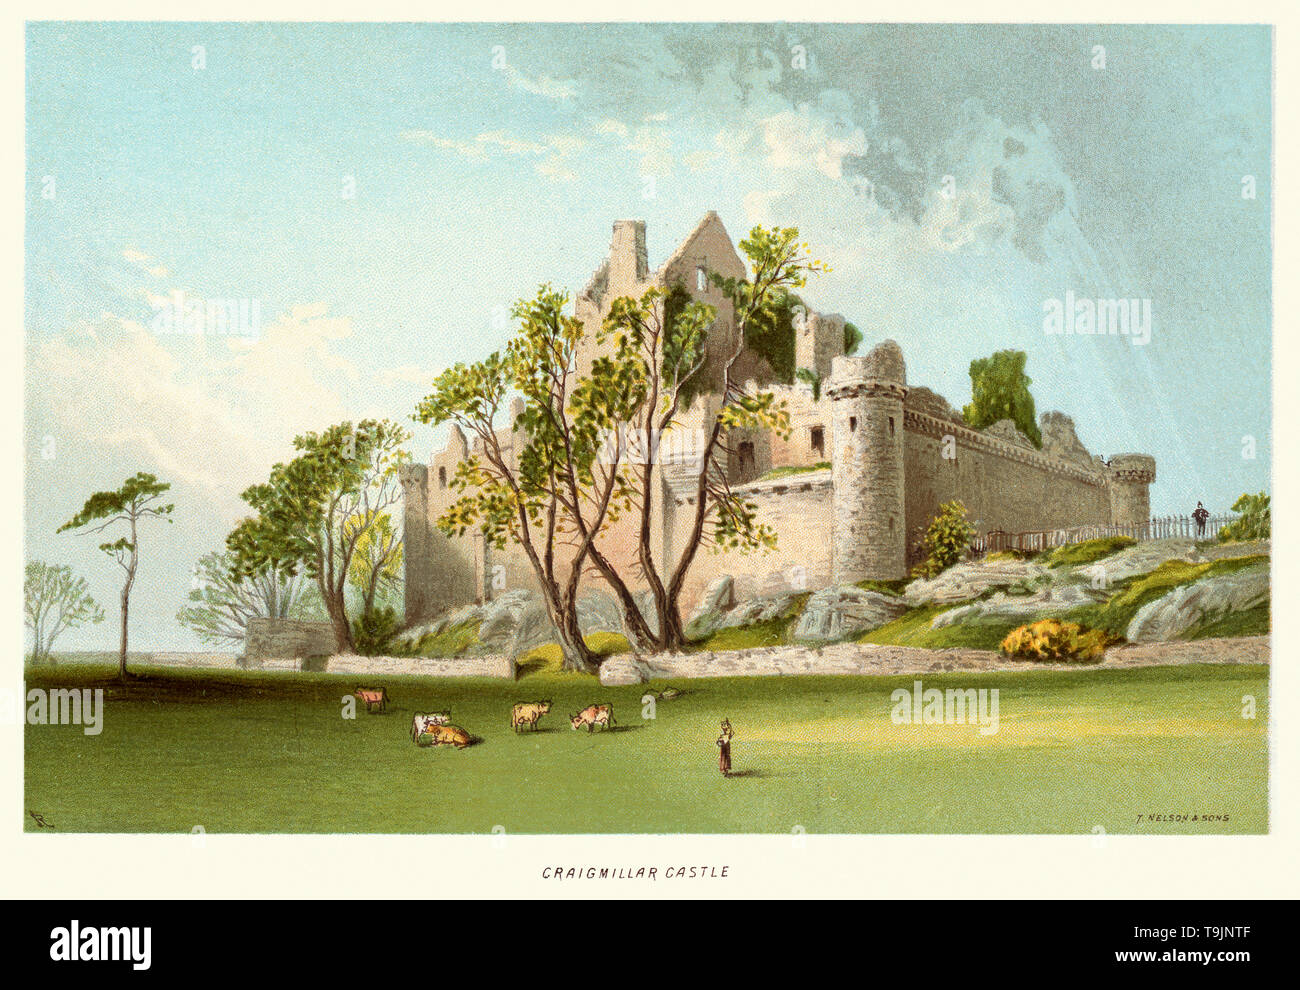 Vintage print de Craigmillar Castle vers 1880. Craigmillar Castle est un château médiéval en ruine à Édimbourg, en Écosse. Il a été commencé à la fin du xive siècle par la famille Preston, barons féodaux de Craigmillar, et prolongé jusqu'à la 15e et 16e siècles. Banque D'Images